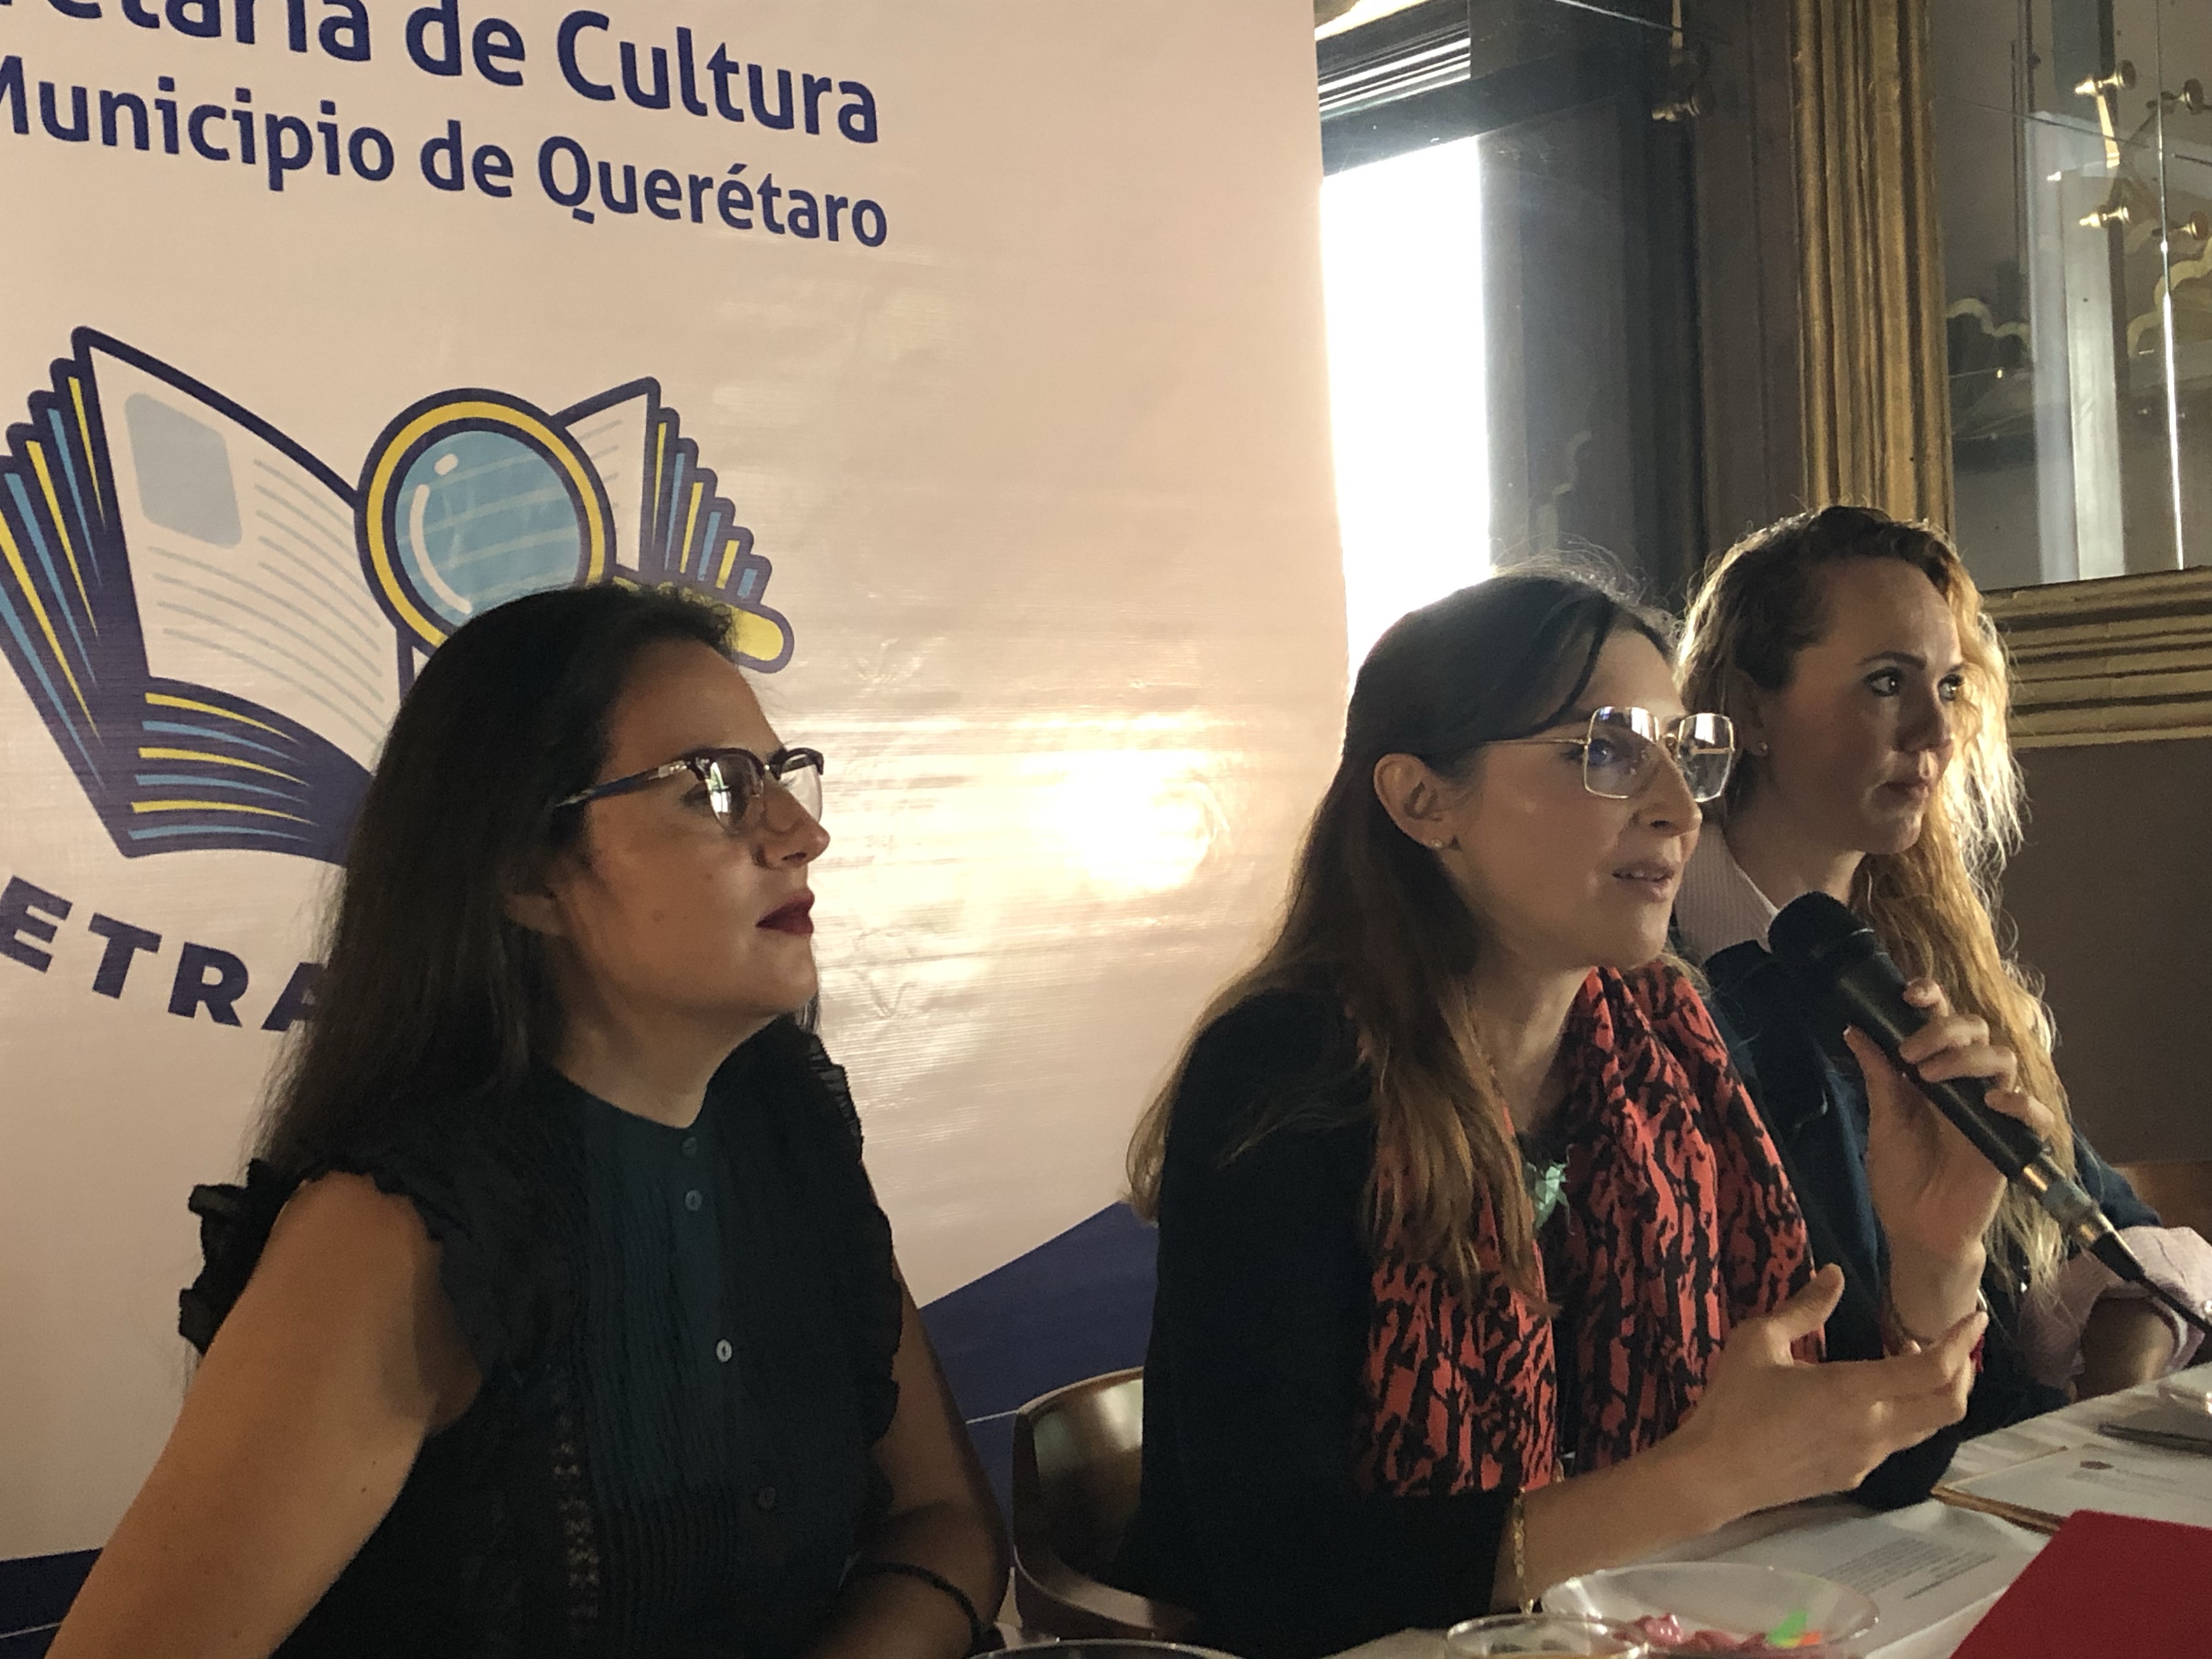  Llevarán frases y fragmentos literarios a bardas y muros de Querétaro